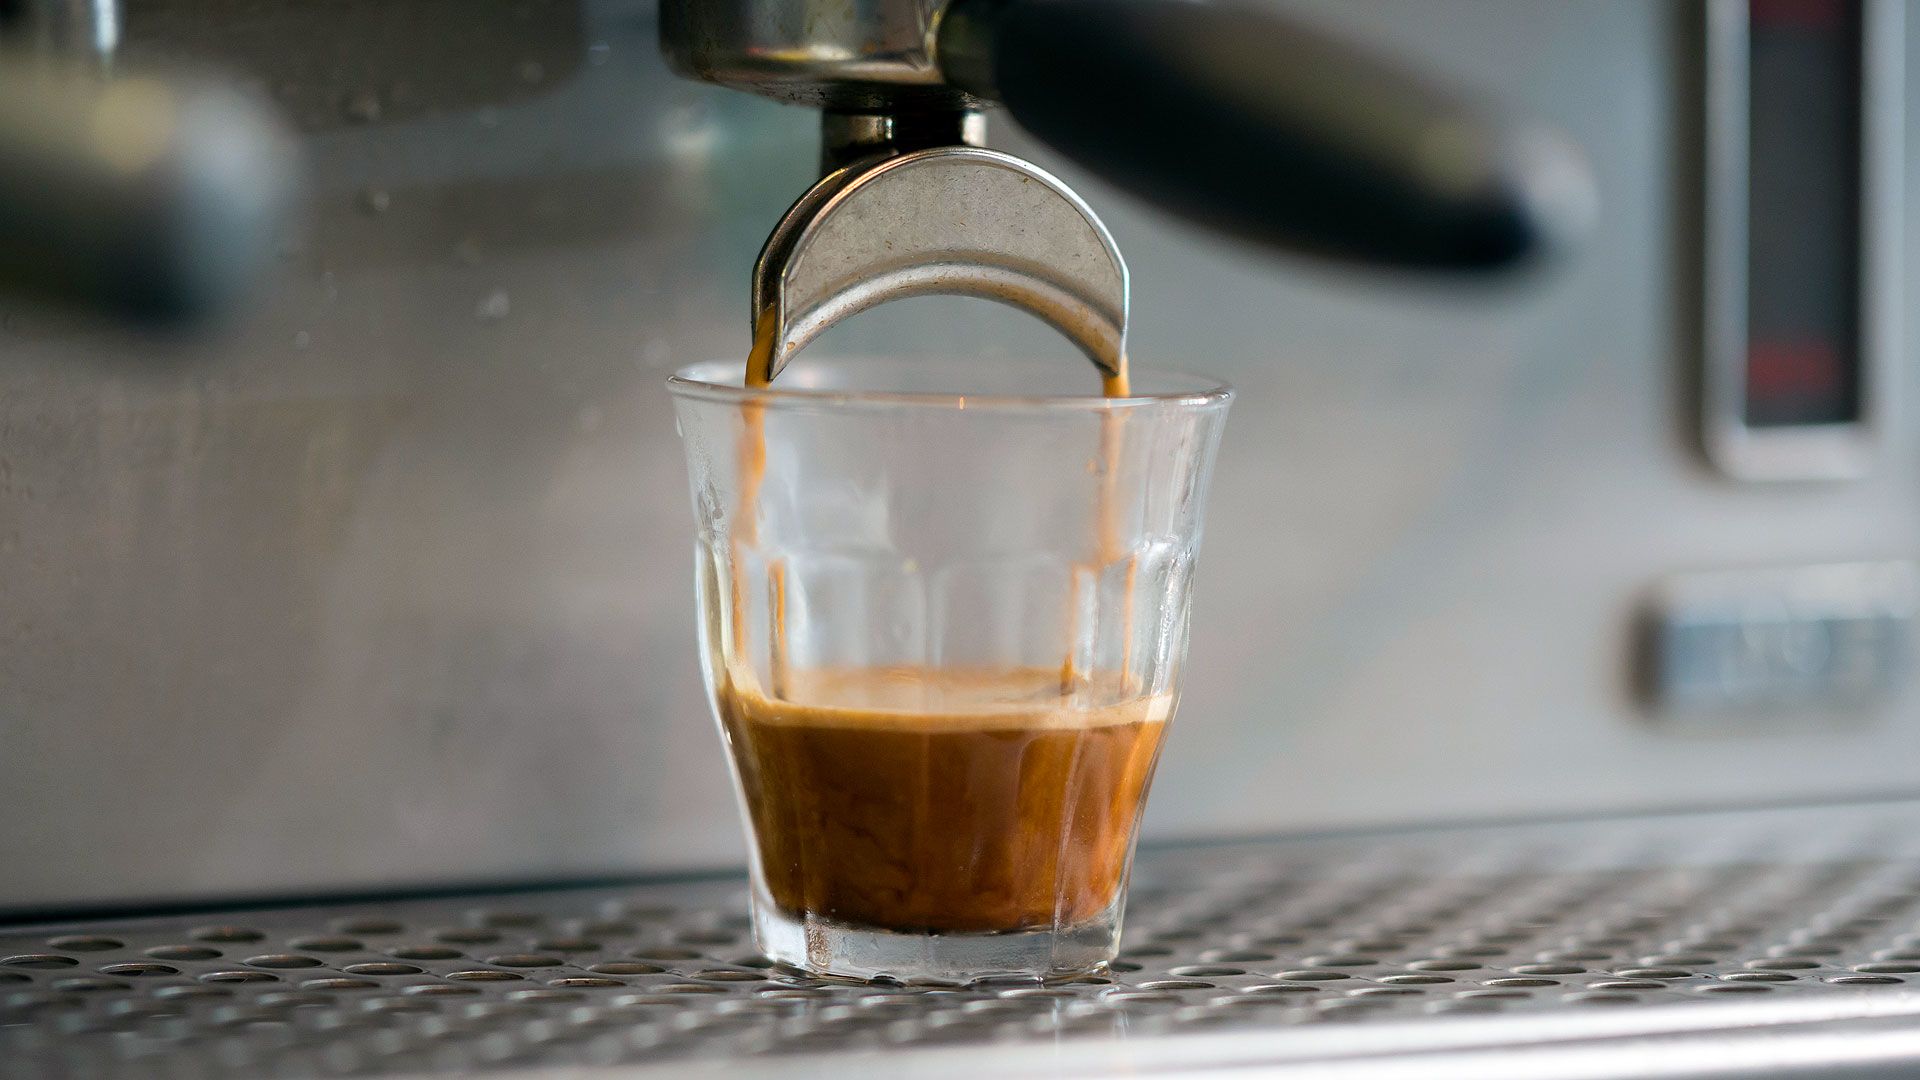 Vastagbélrák megelőzése: a kávé és a koffein lehet a megoldás